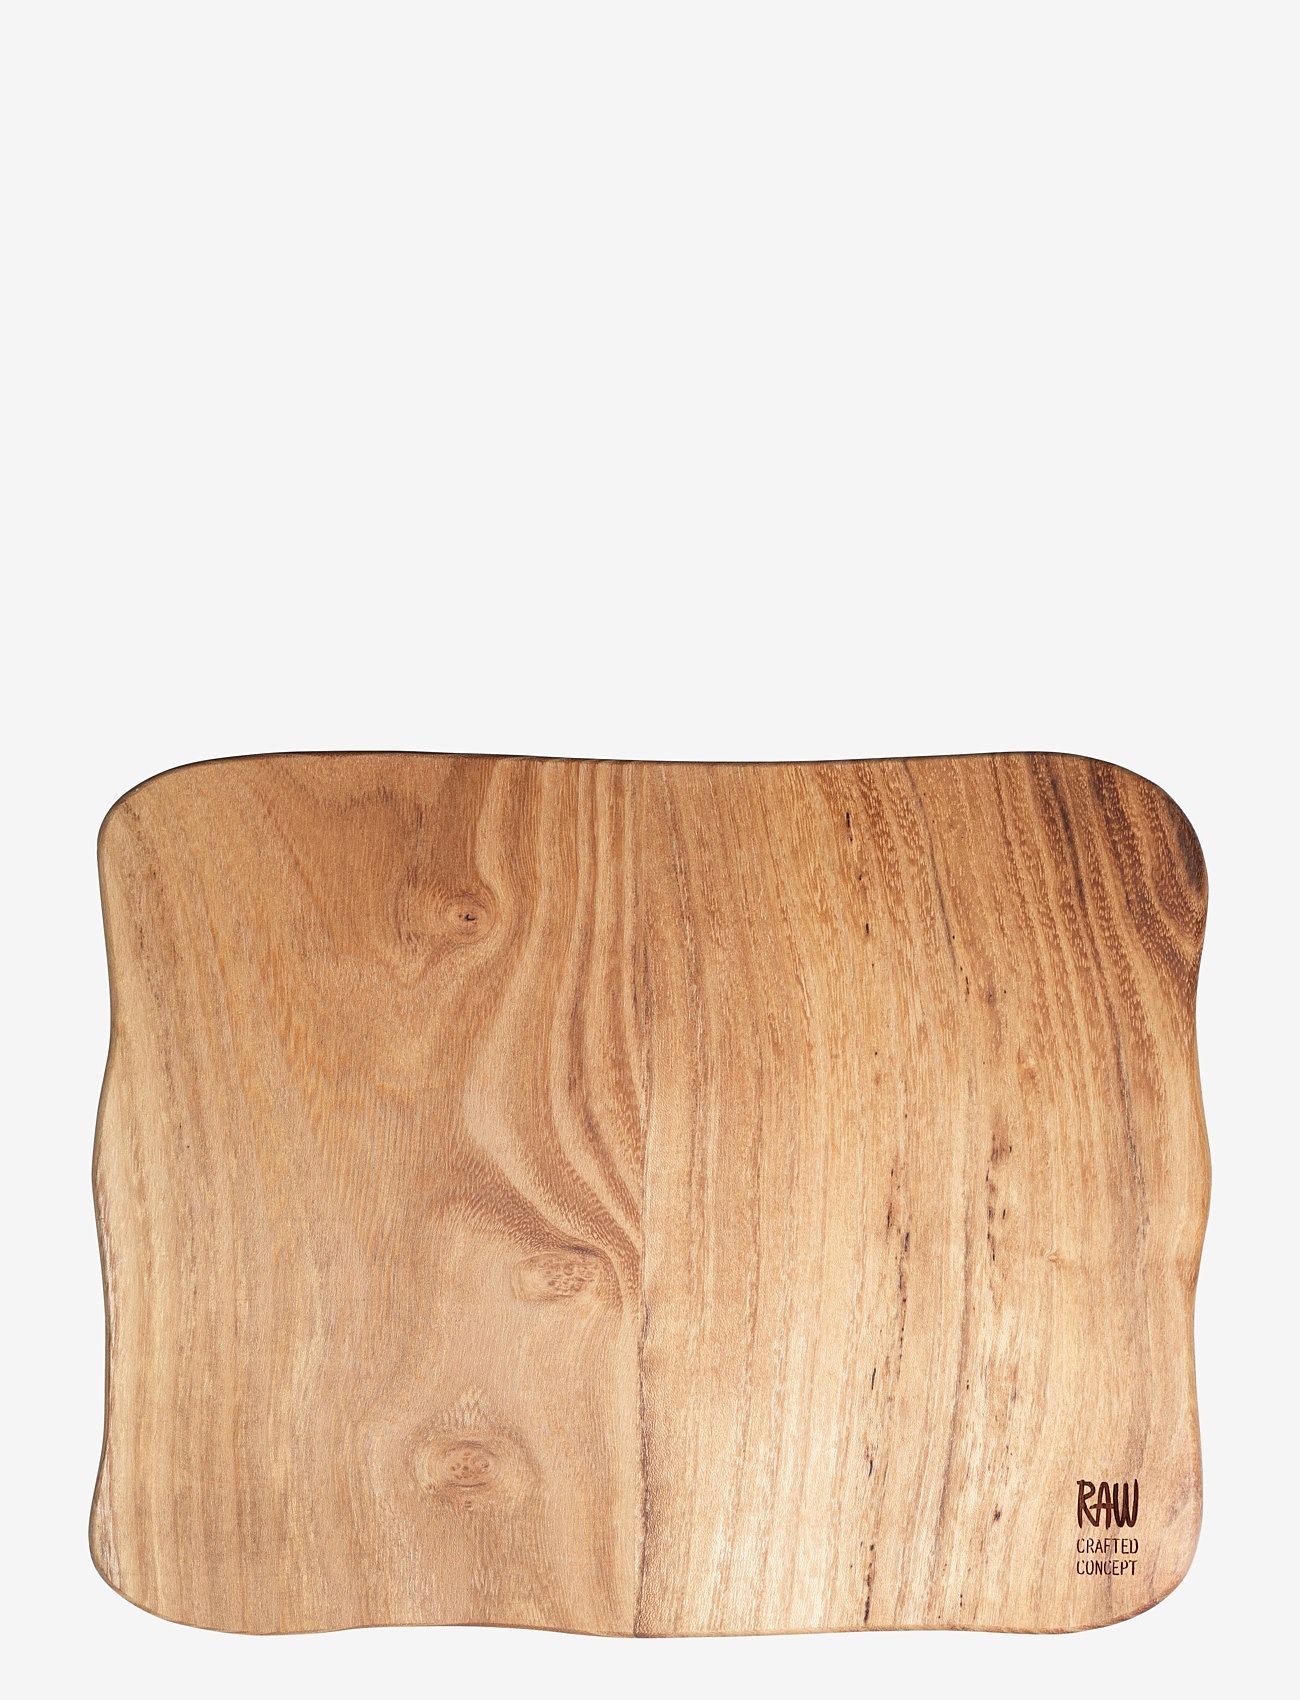 Aida - RAW Teak Wood - cuttingboard - laagste prijzen - teak - 0